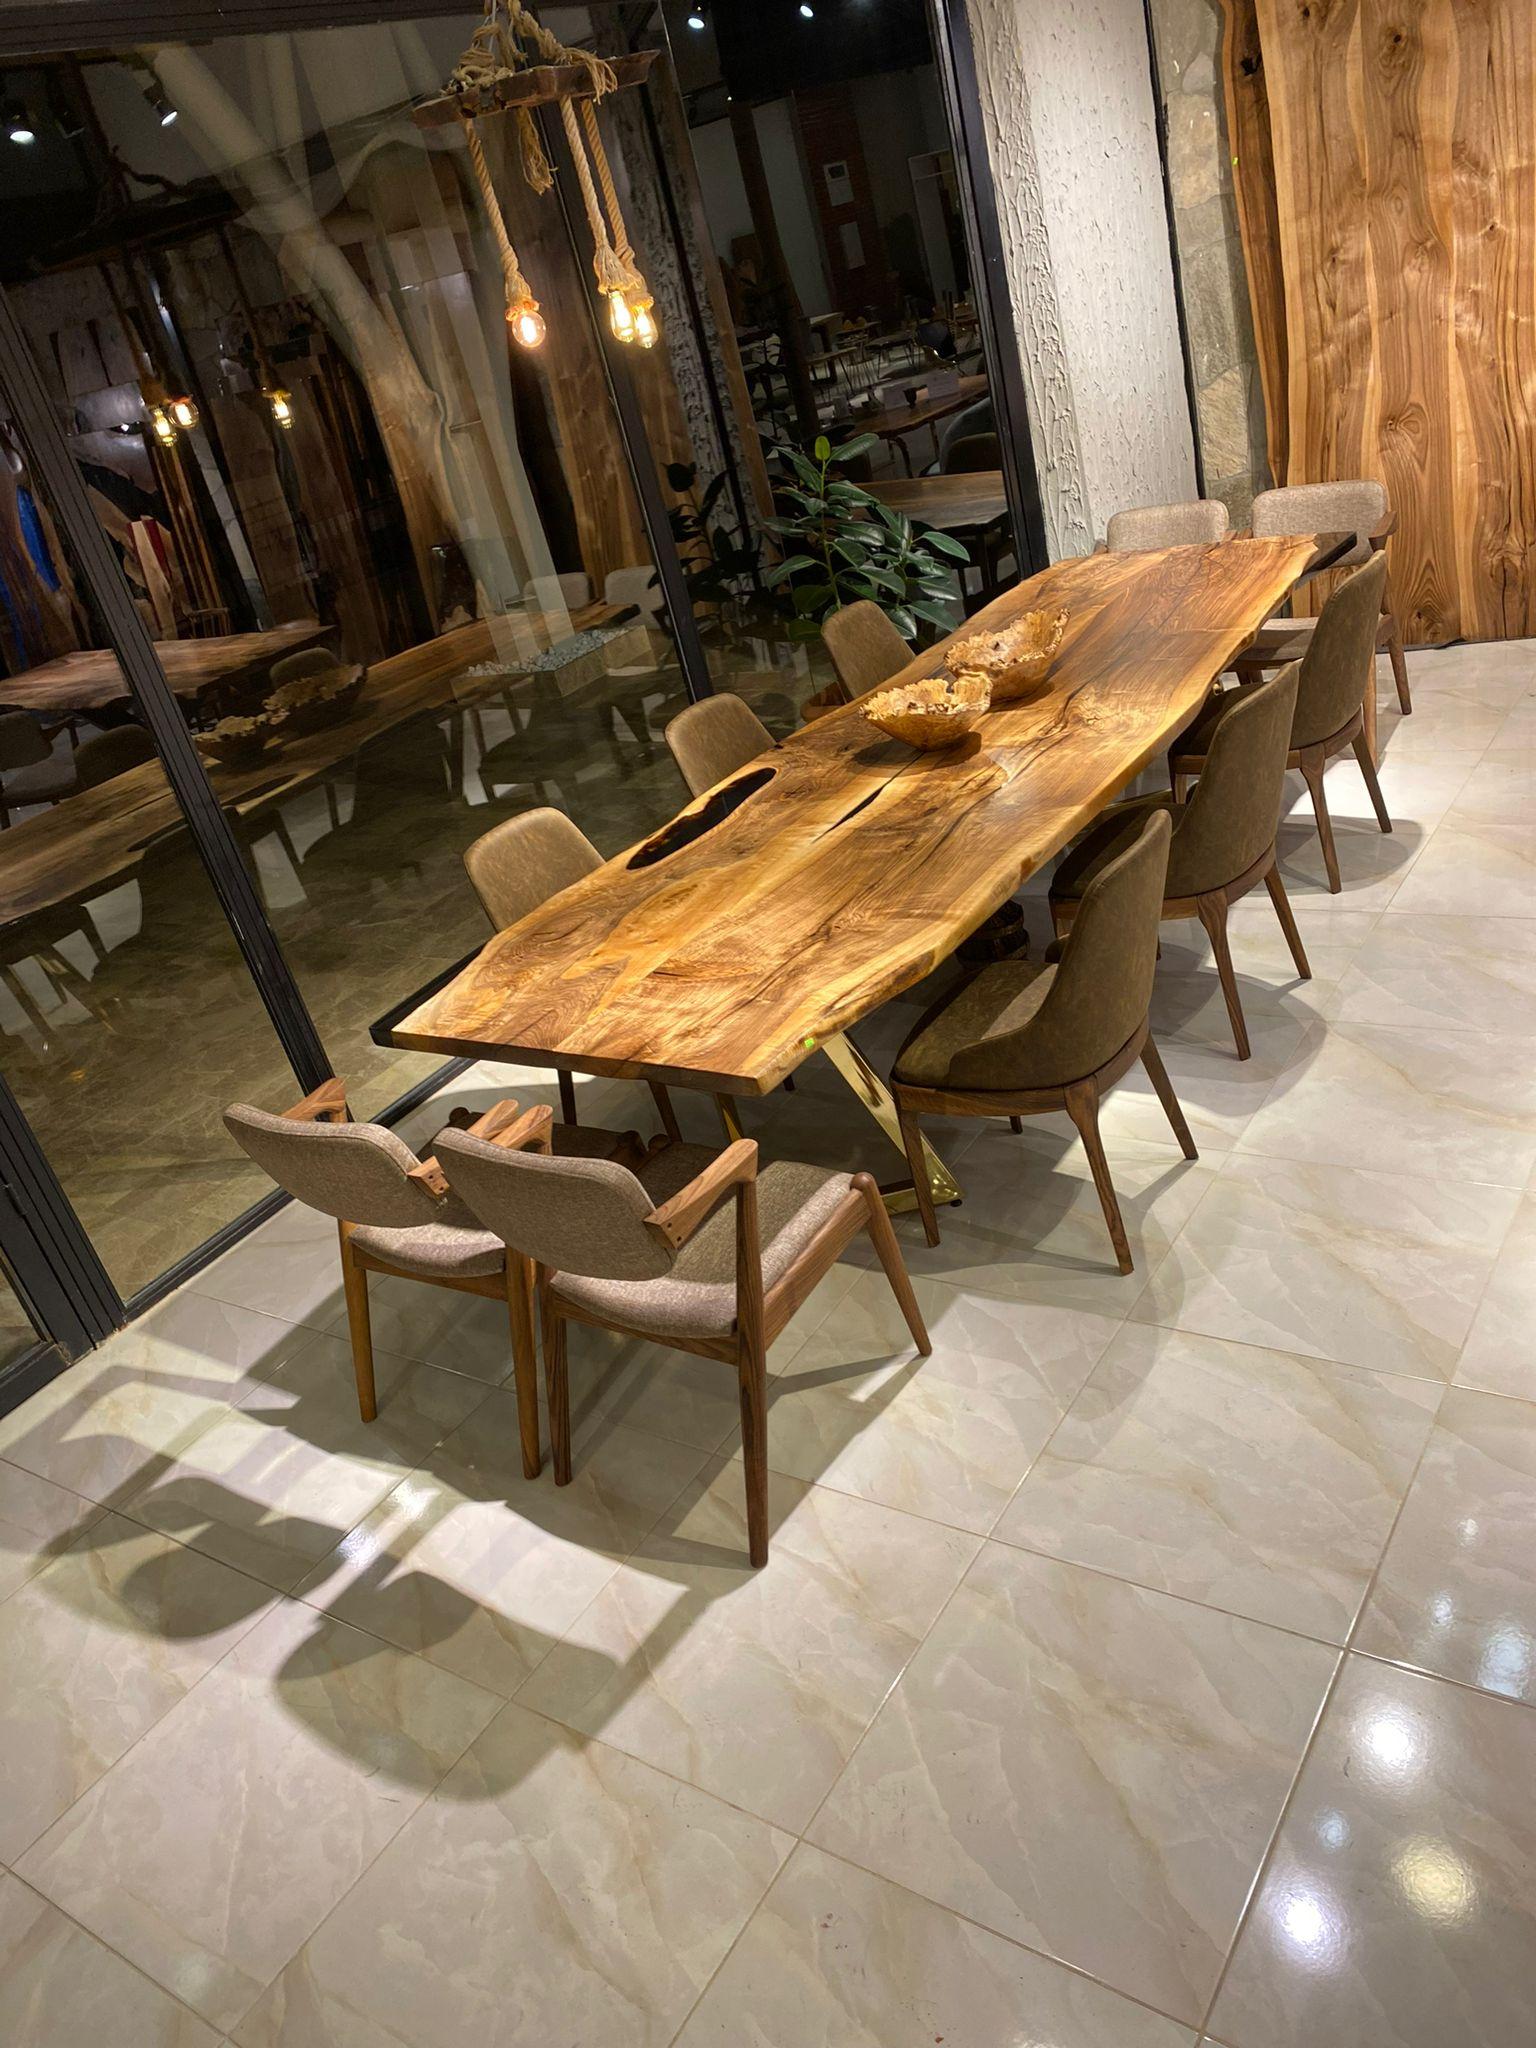 Nussbaum Live Edge Clear Epoxy Resin Küche & Esstisch 

Dieser Tisch ist aus 500 Jahre altem Walnussholz gefertigt. Die Maserung und die Struktur des Holzes beschreiben, wie ein natürliches Walnussholz aussieht.
Er kann als Esstisch oder als